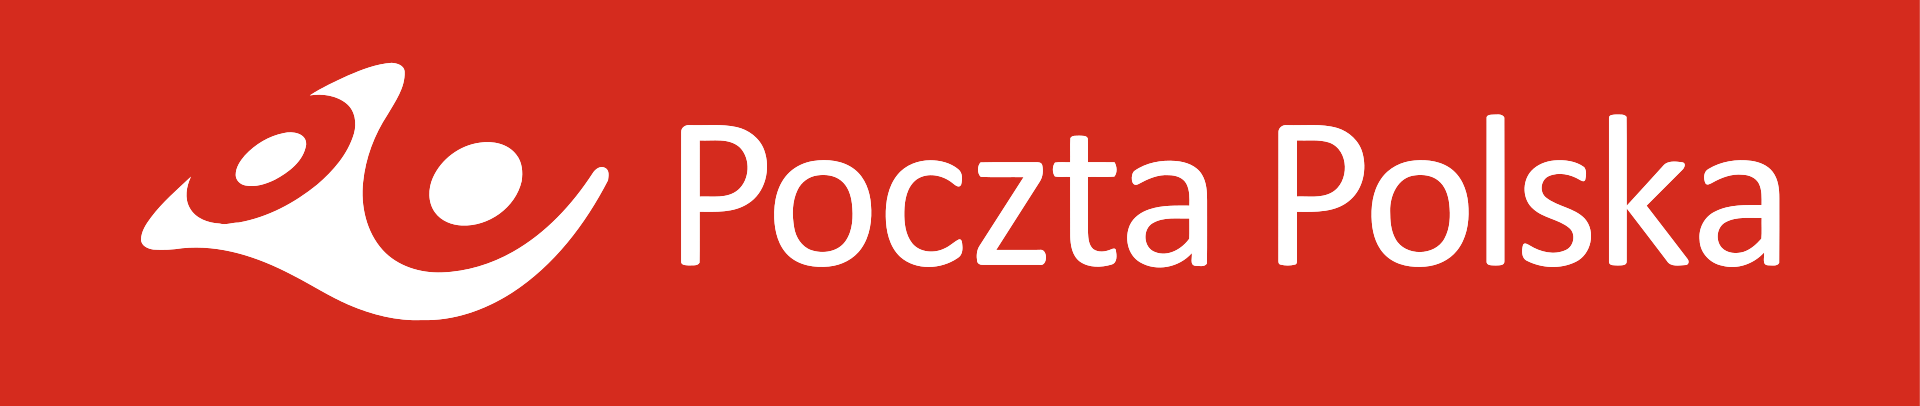 Poczta Polska Brand Logo